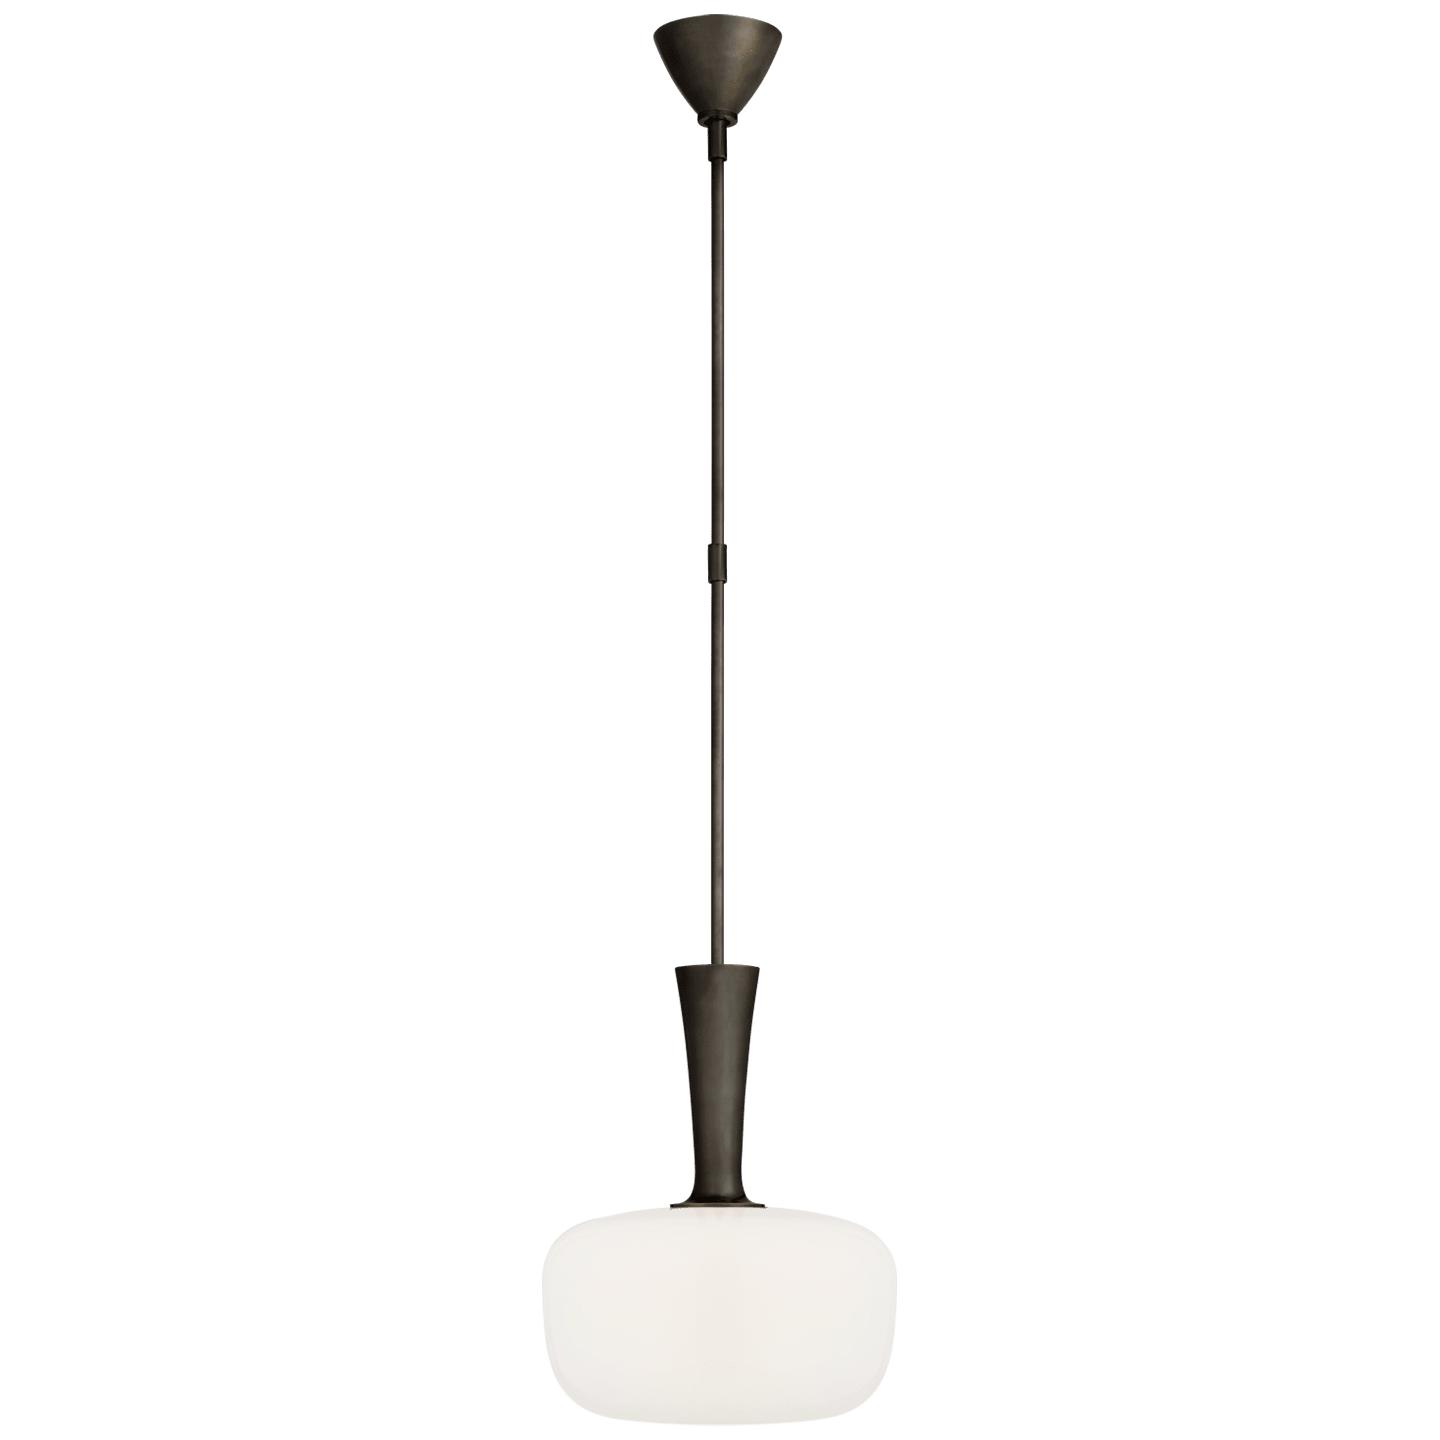 Купить Подвесной светильник Sesia Small Oval Pendant в интернет-магазине roooms.ru